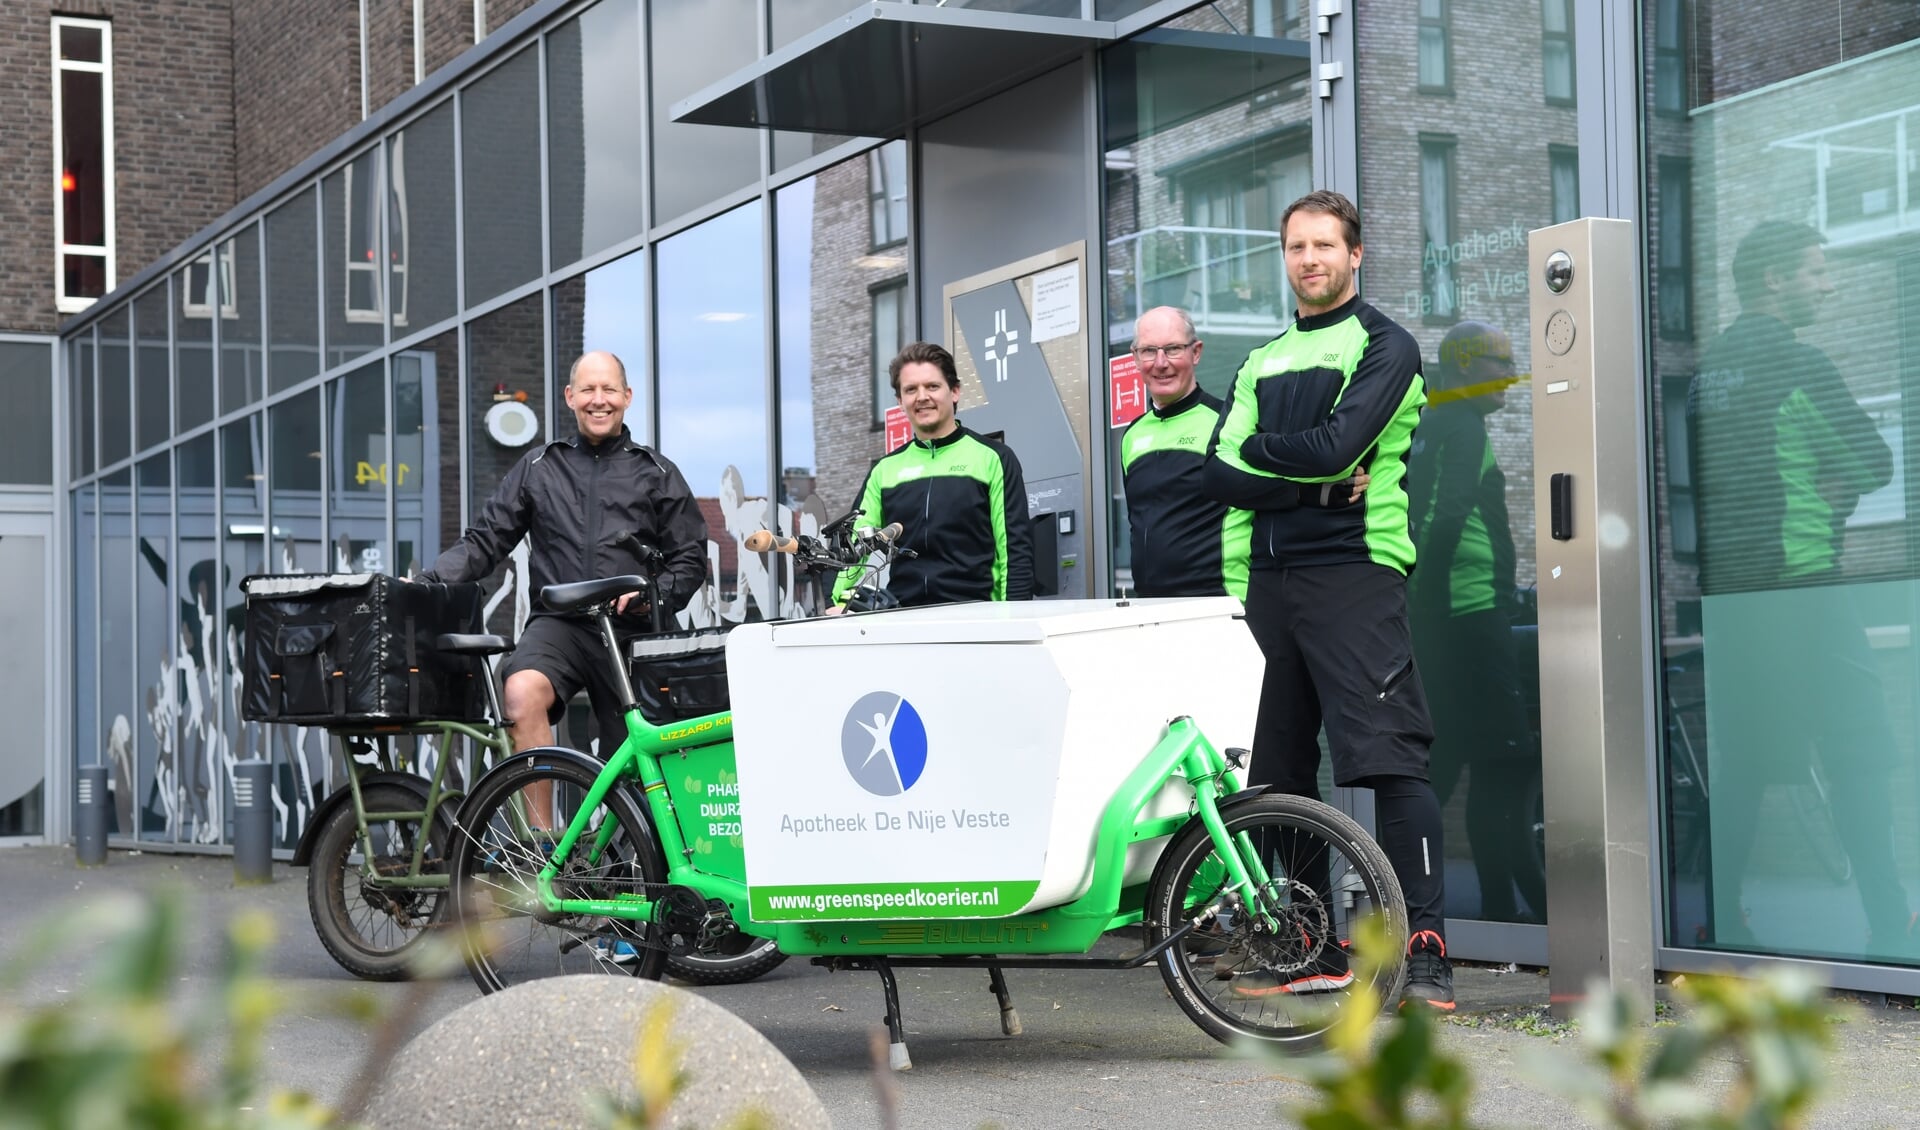 De Nijkerkse apothekers Jan van der Krift en Anke Barsema zetten de fietskoeriers van Greenspeed in voor de bezorging van medicatie in Nijkerk.